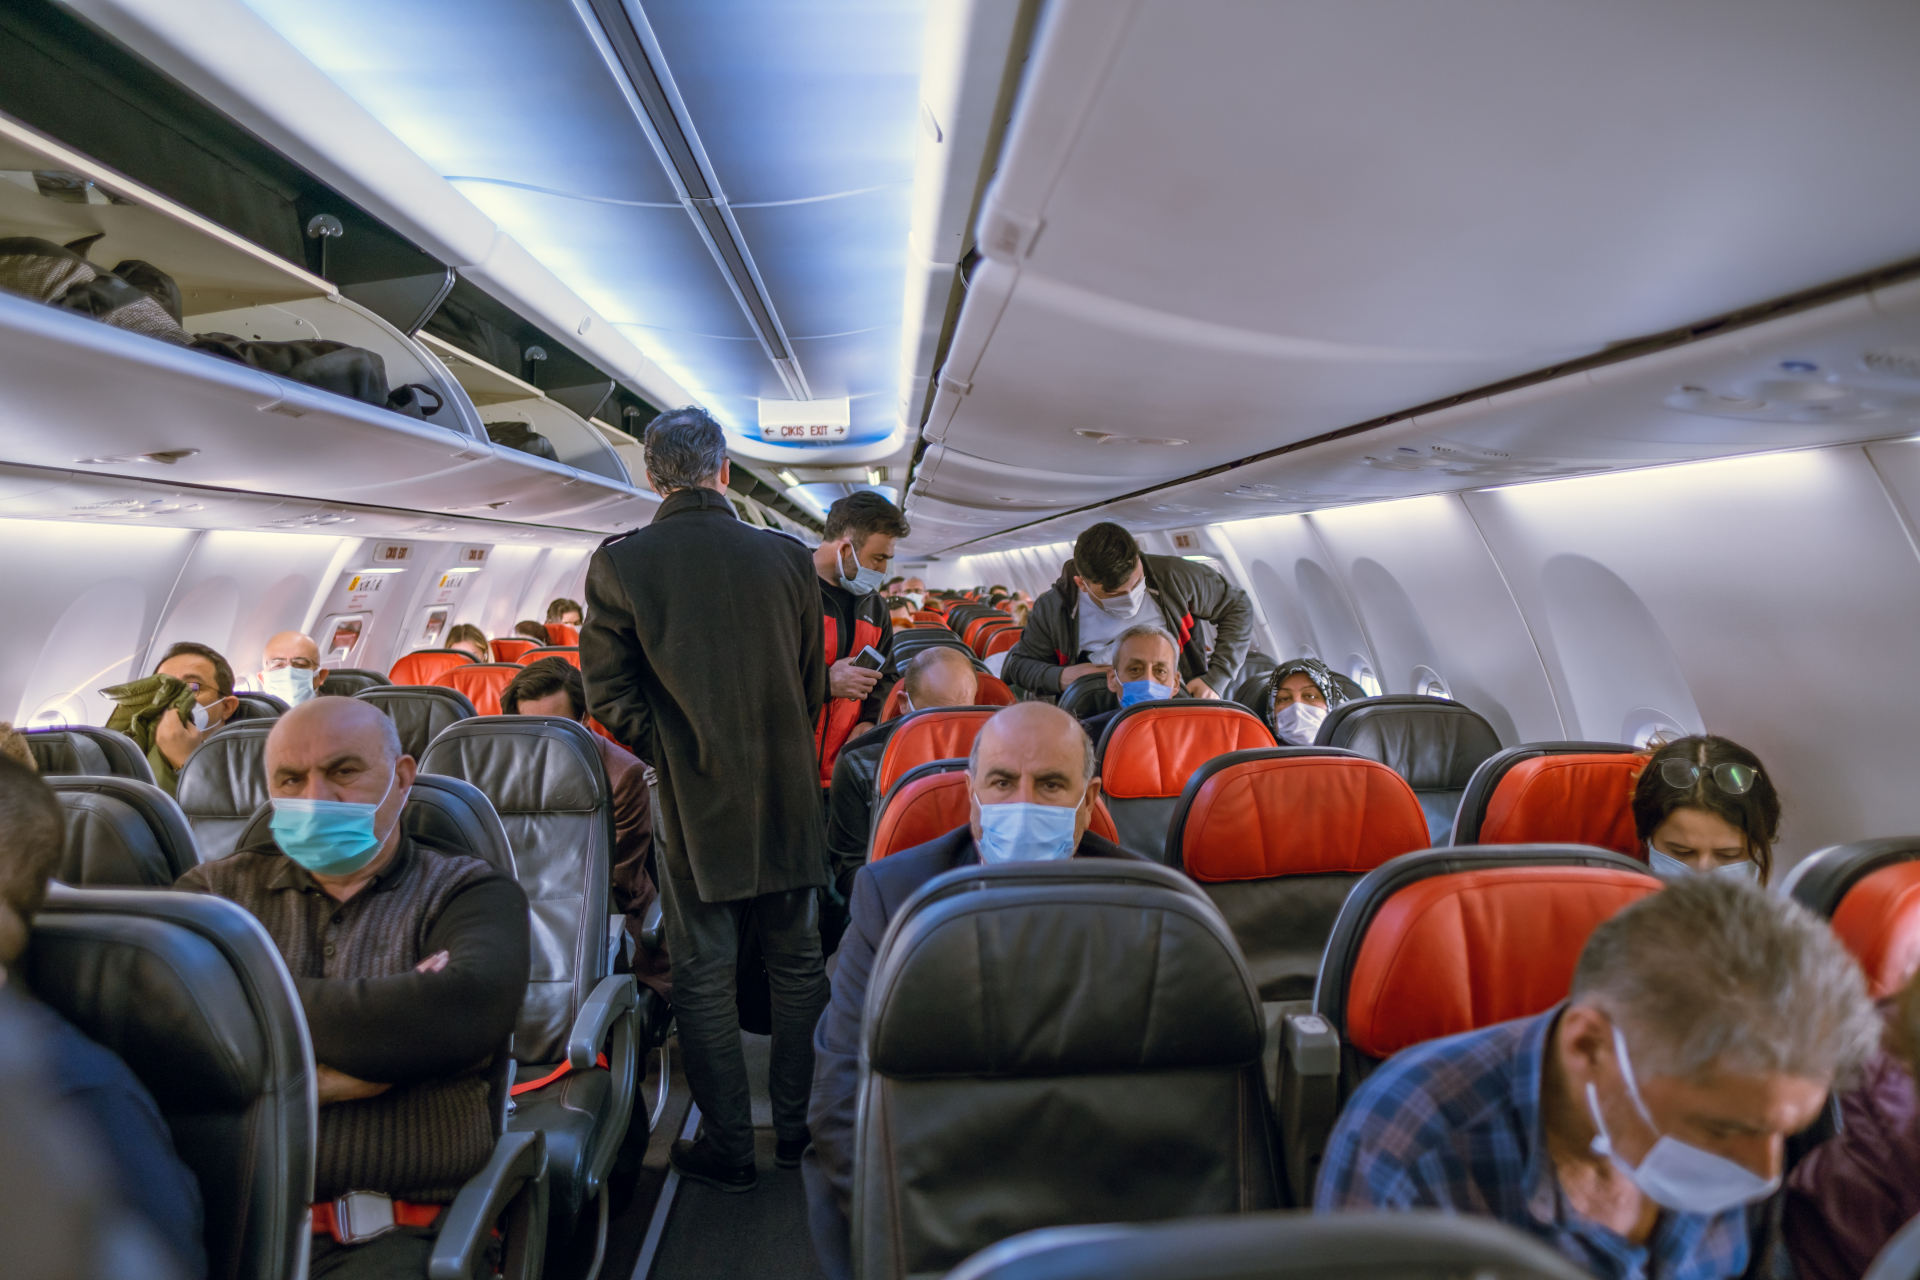 Между оргазъм и повръщане: Мистериозни звуци сащисаха пътници в самолет ВИДЕО